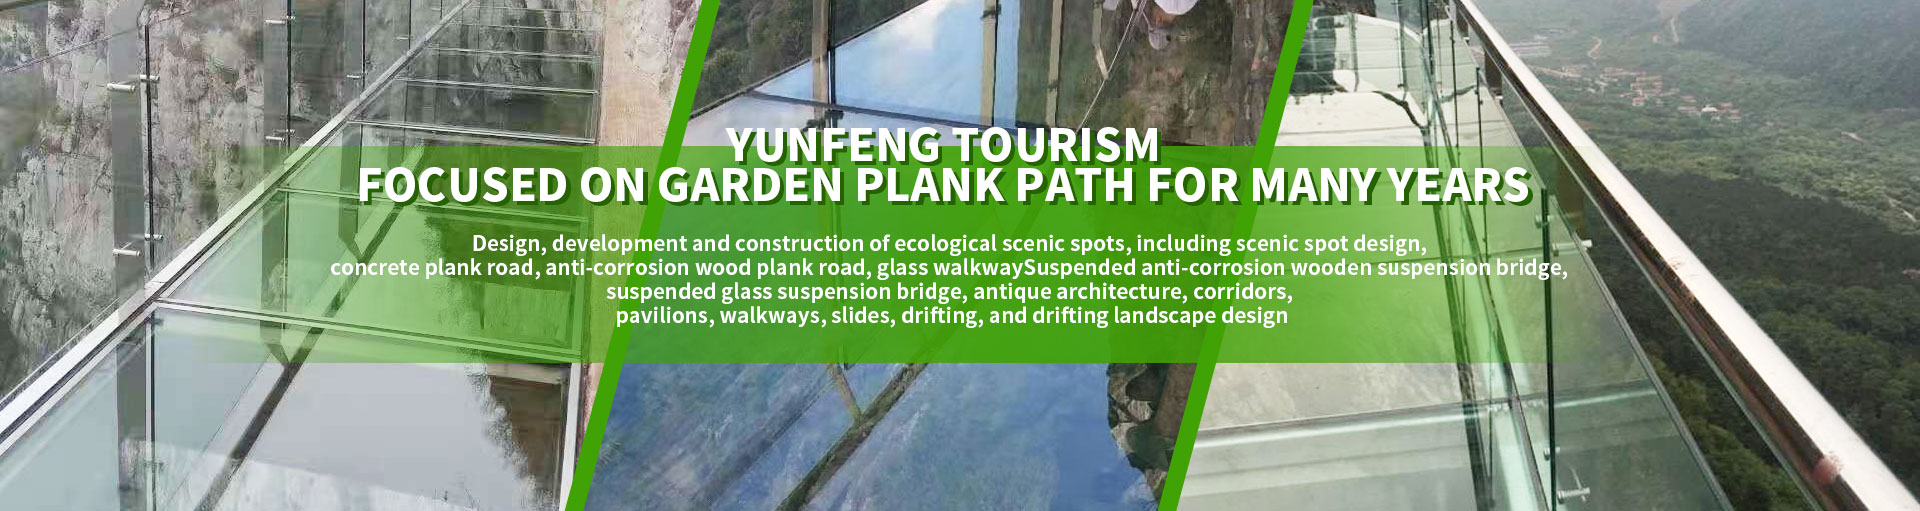 Henan Yunfeng Tourism Development Co., Ltd